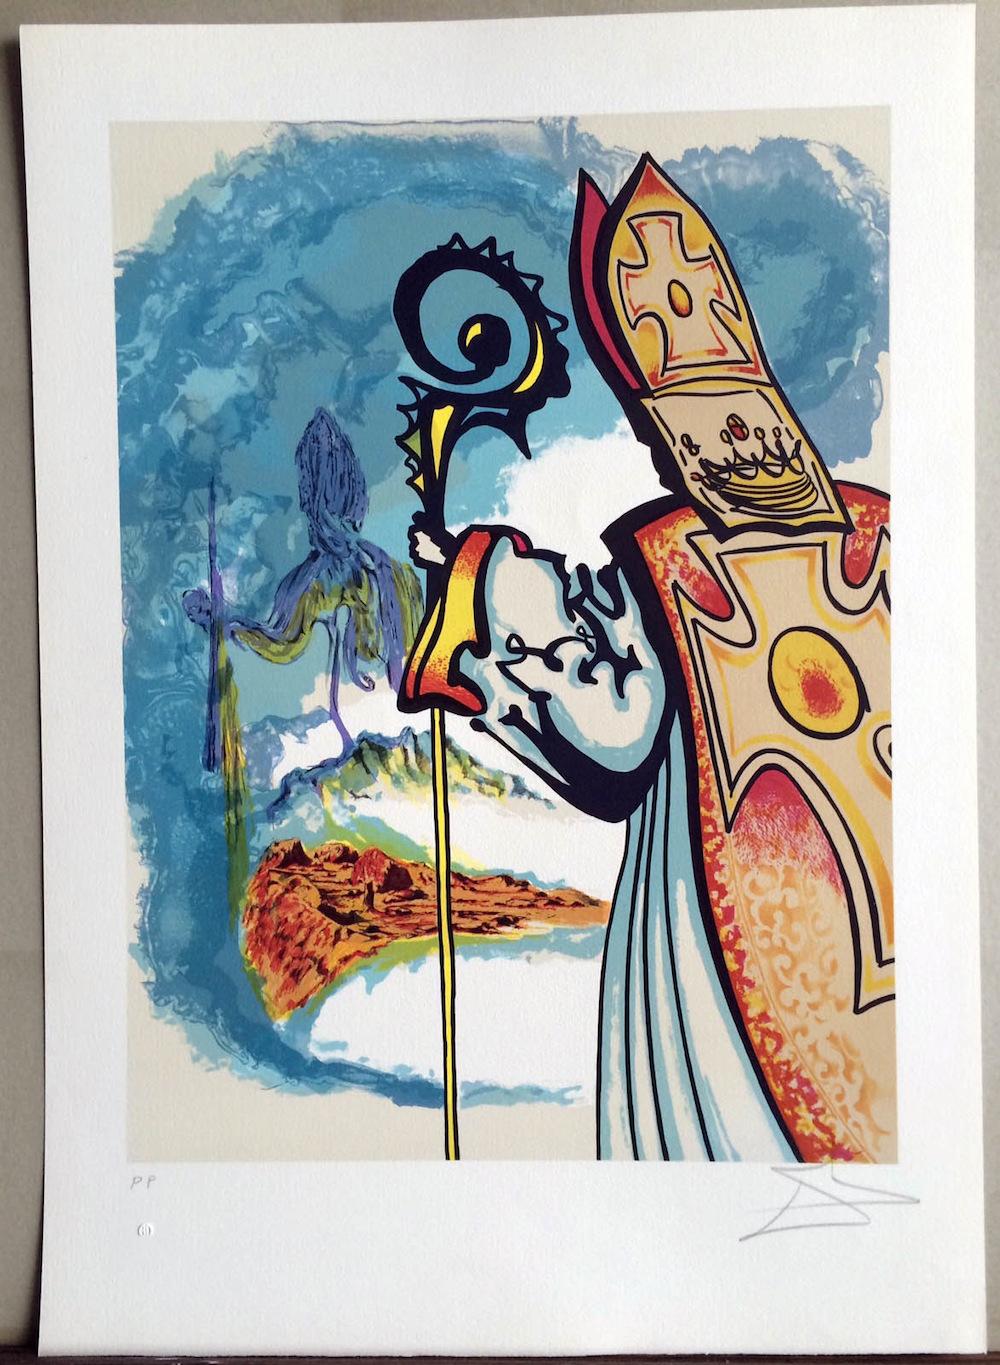 King Richard, Ivanhoe Suite 1977, signierte Lithographie, Langer Robe, Bischofsmiter – Print von Salvador Dalí